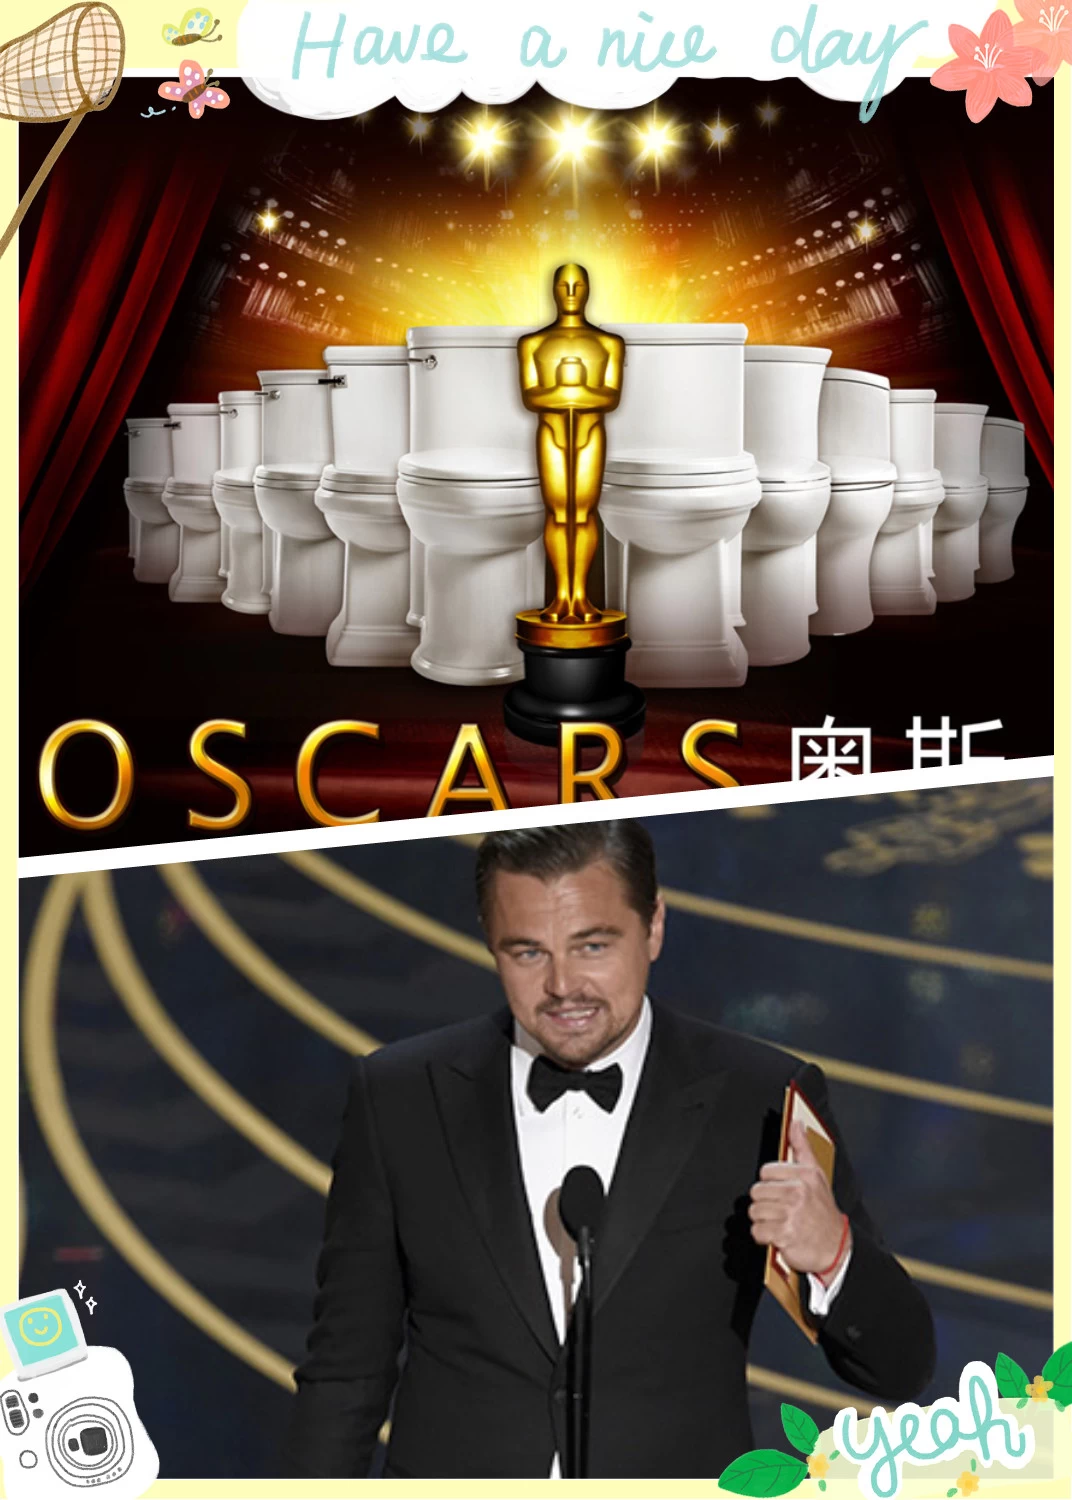 The Oscar award